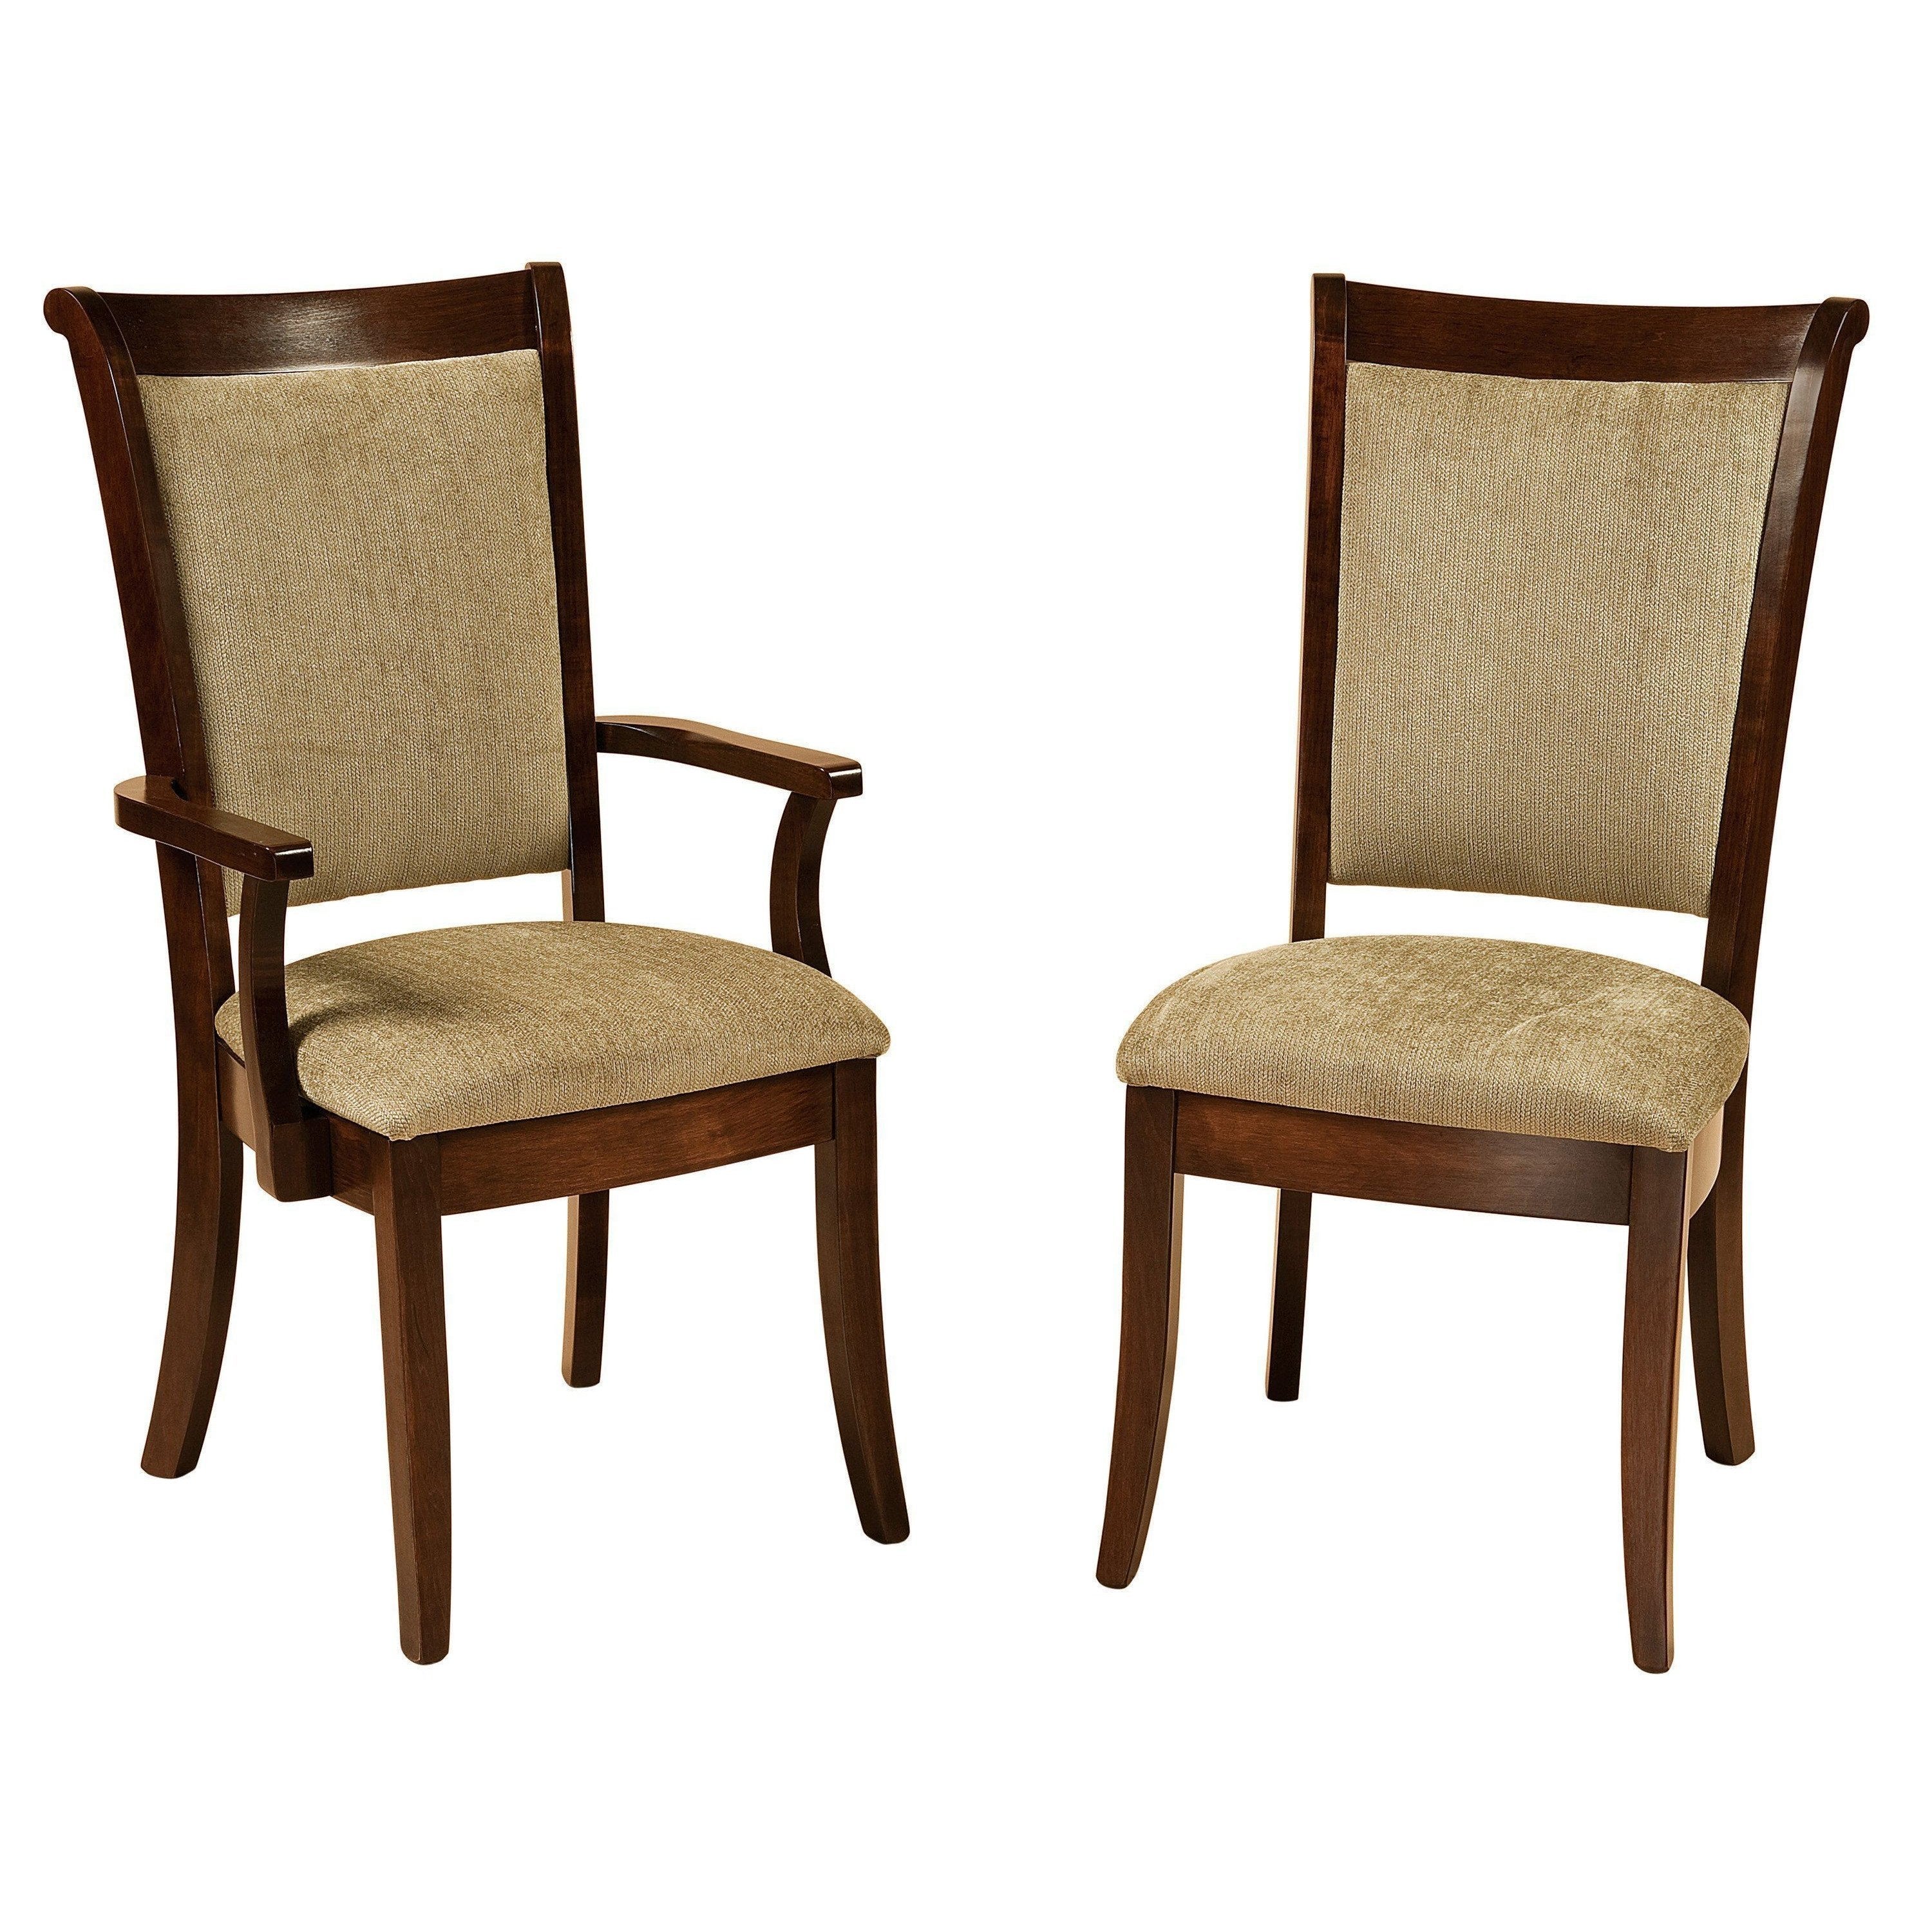 kimberly-chairs-260180.jpg